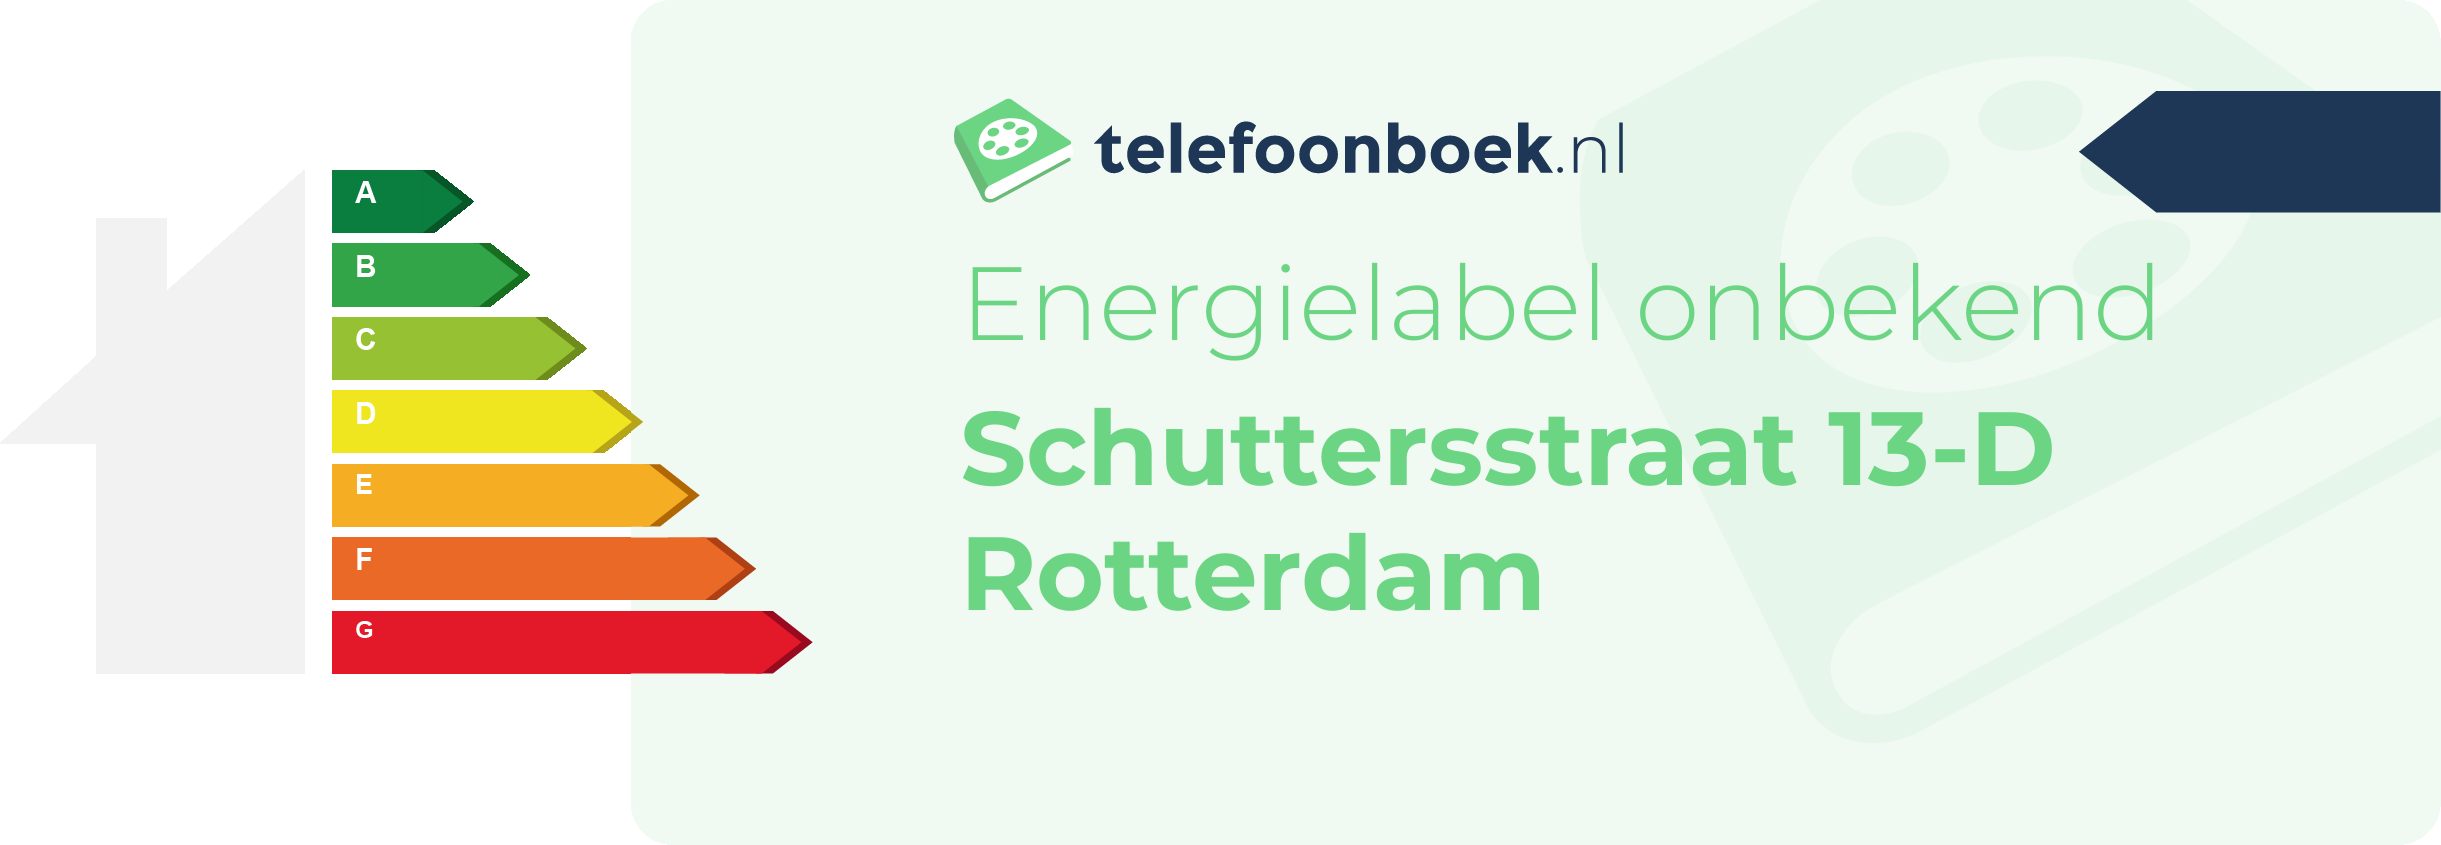 Energielabel Schuttersstraat 13-D Rotterdam